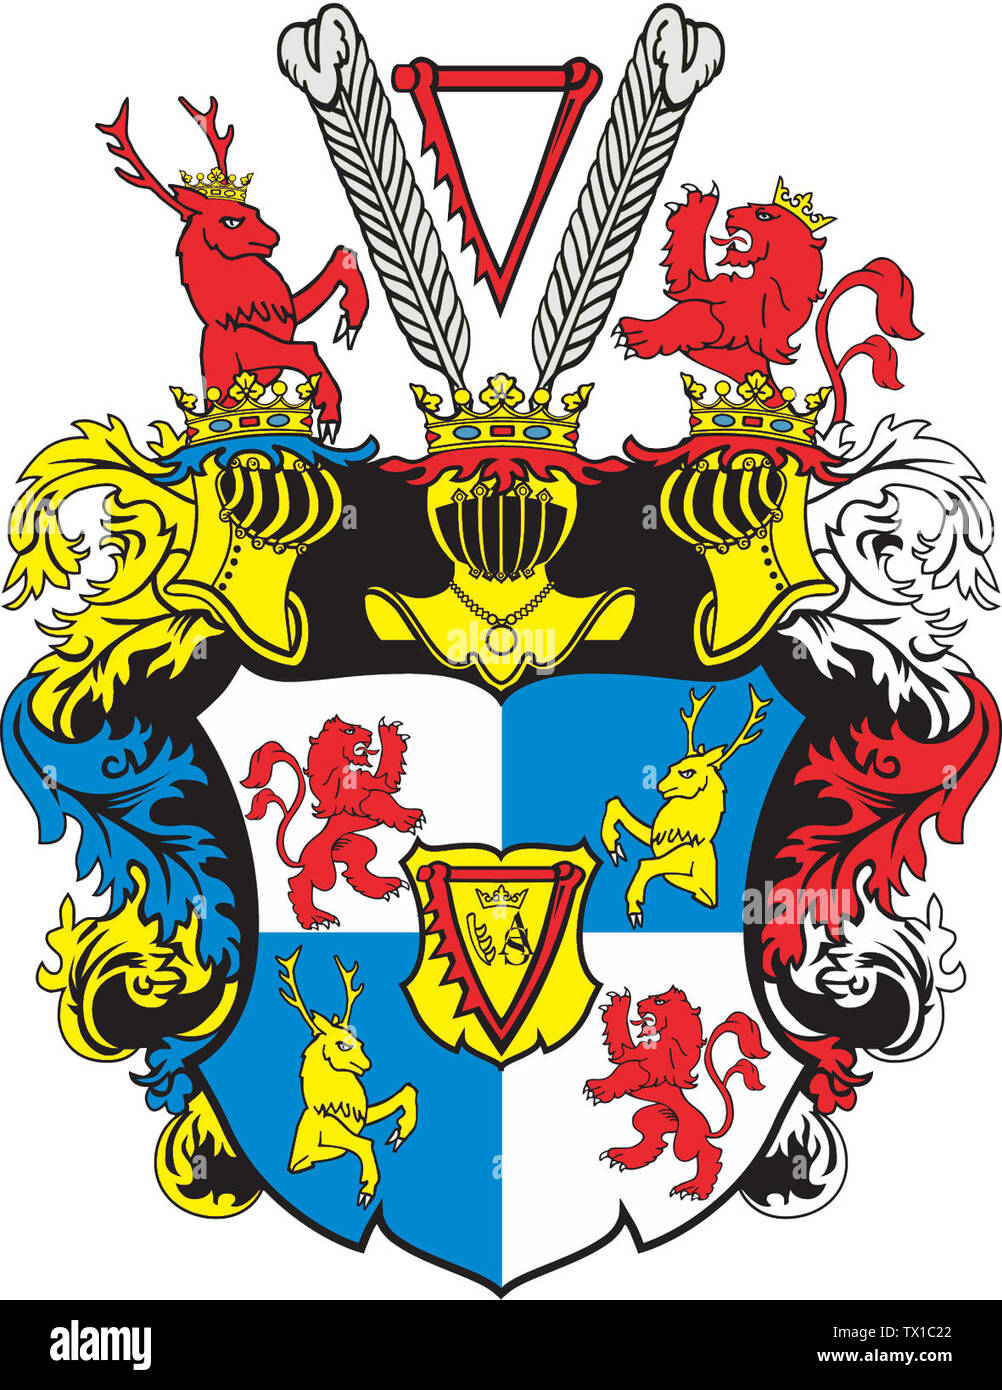 LatvieÅ¡u: Kurzemes un Zemgales hercogistes Ä£erbonis 1565.-1737. g. (Coat of Arms of Duchy of Courland and Semigallia); patiesÄ«bÄ hercogu Ketleru dzimtas Ä£erbonis (Coat of Arms of House of Kettler, Dukes of Courland and Semigallia). Ä¢erboni dzimtai pieÅ¡Ä·Ä«ris 1565. gadÄ Å½eÄpospoÄ¼itas karalis Sigismunds Augusts. AtseviÅ¡Ä·as Ä£erboÅ†a detaÄ¼as un to izvietojums mainÄ«jÄs laika gaitÄ. PÄrzÄ«mÄ“jis ievietoÅ¡anai lv.pedia A.Buks.; http://lv.pedia//AttÄ“ls:CoatofArmsofDuchyofCourland.jpg; A.Buks; Stock Photo